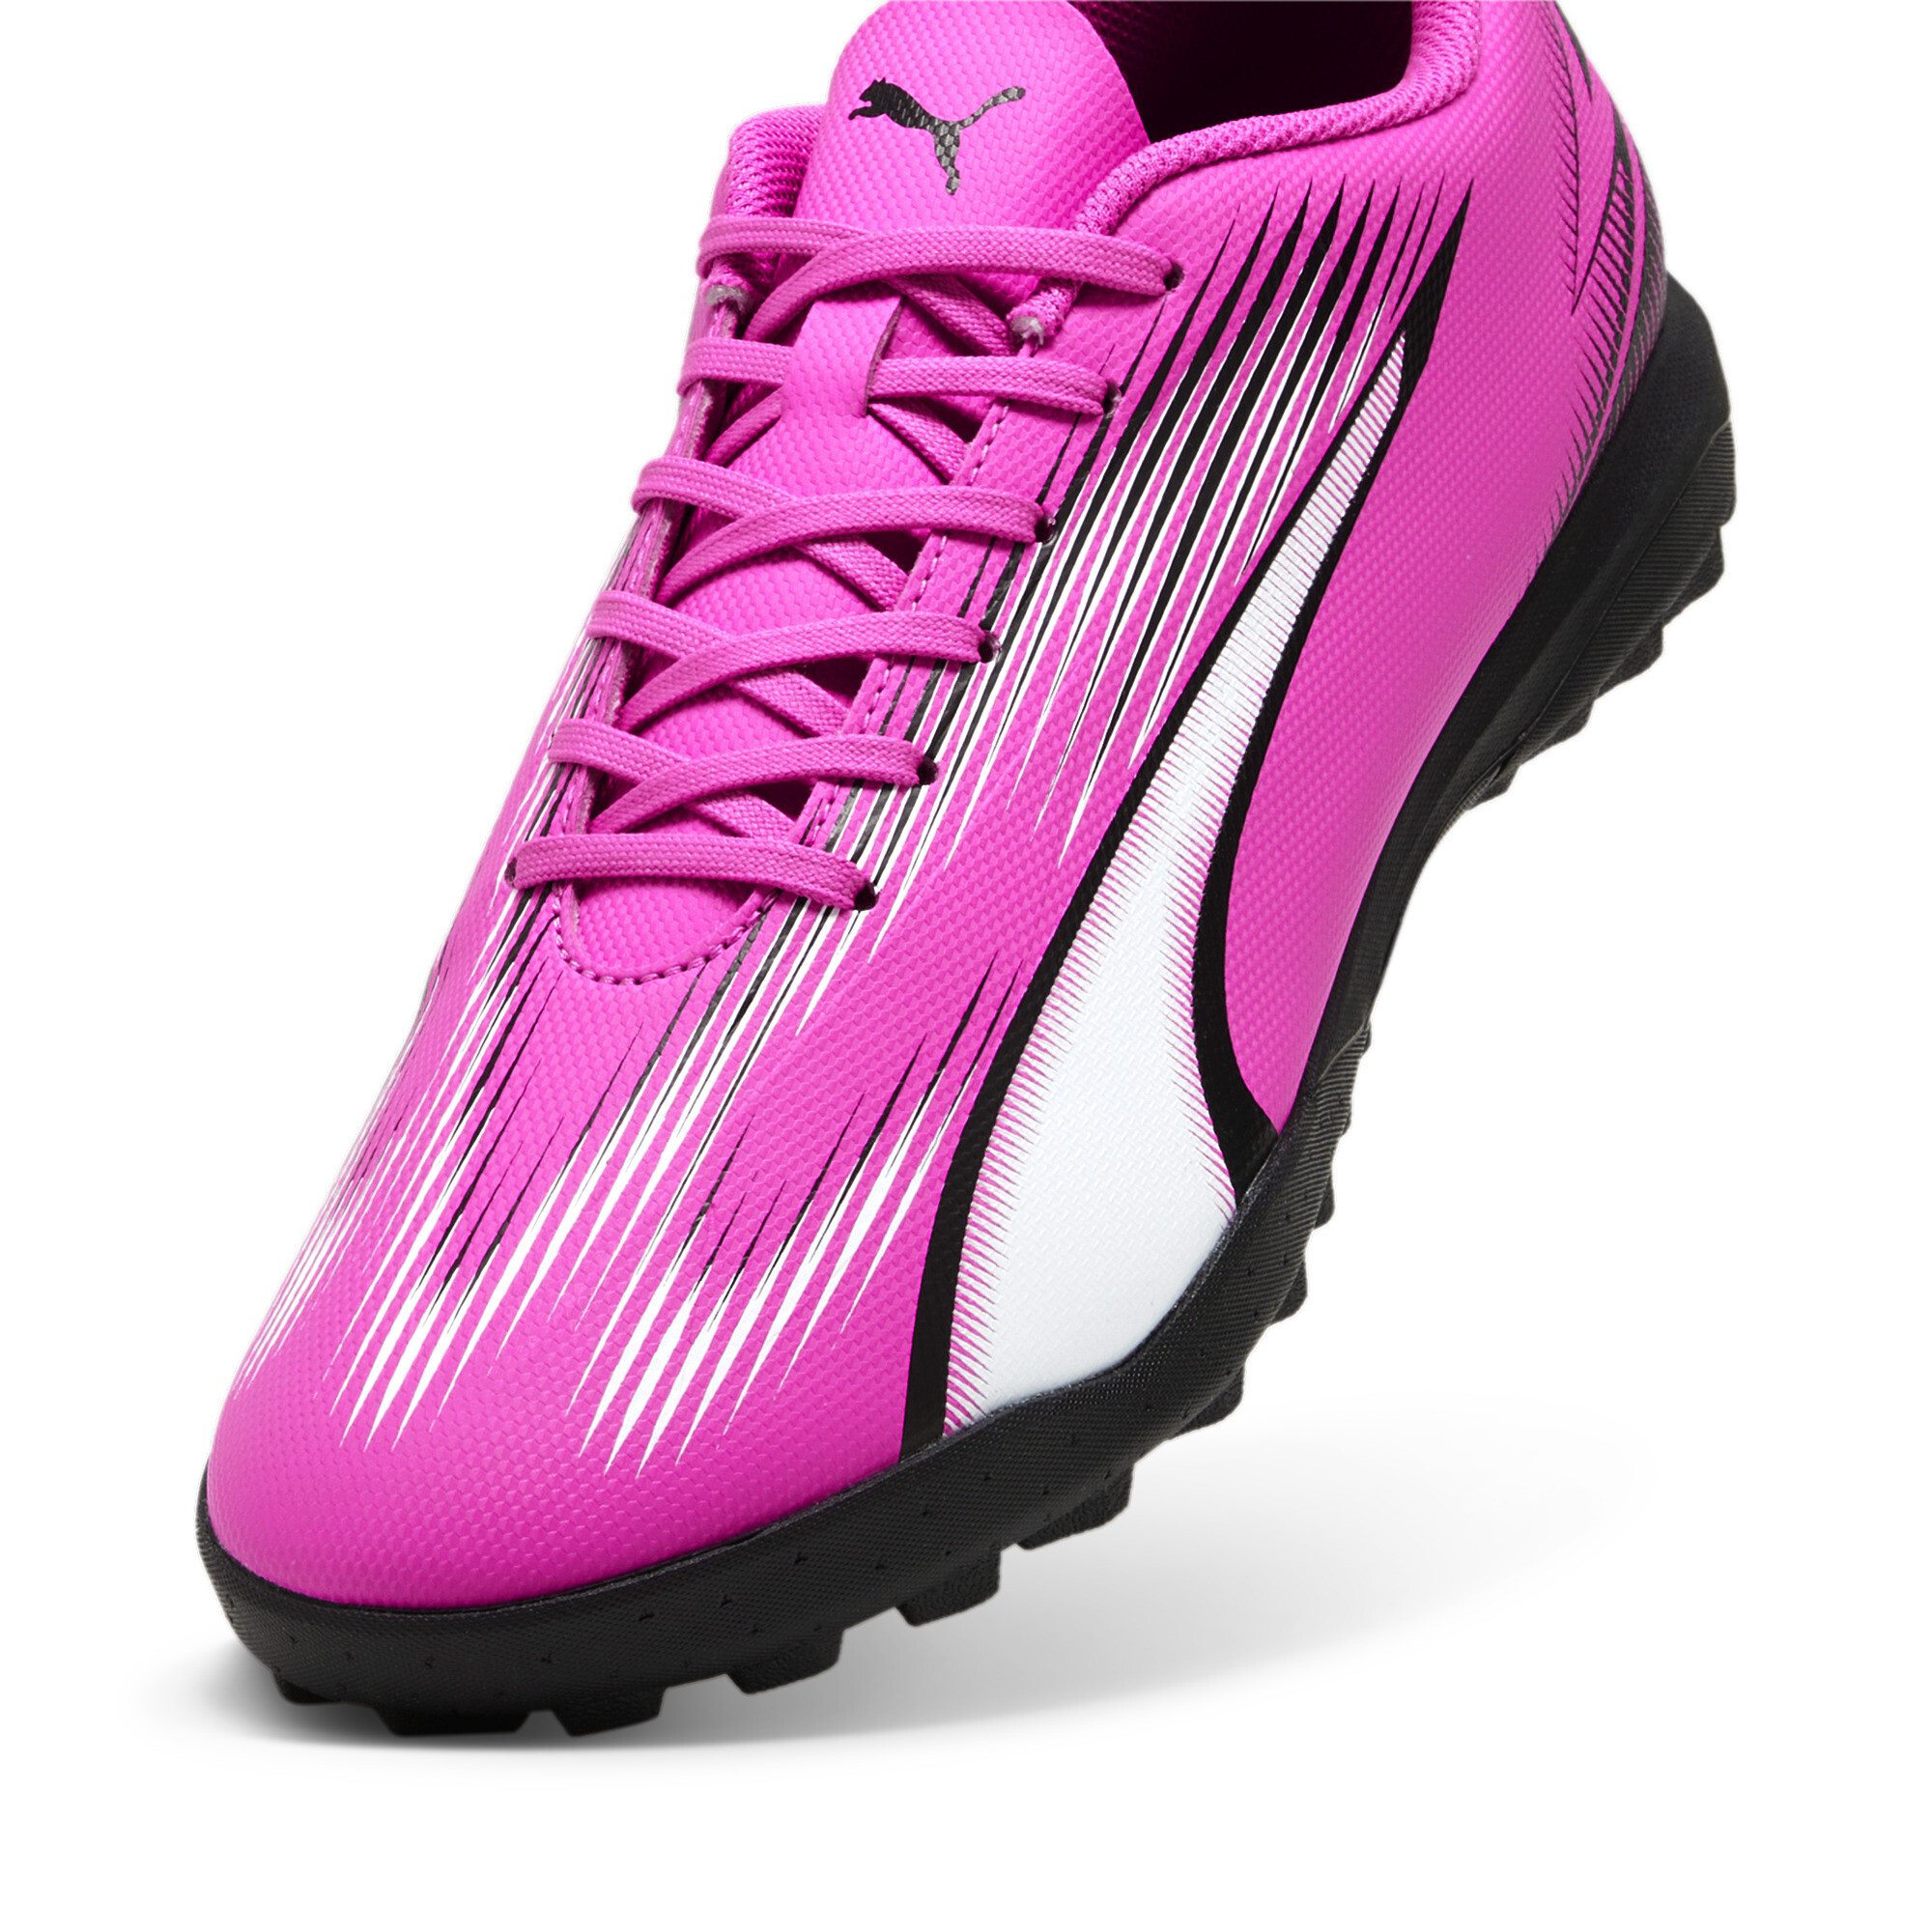 Men's PUMA ULTRA PLAY TT Football Boots In Pink, Size EU 43